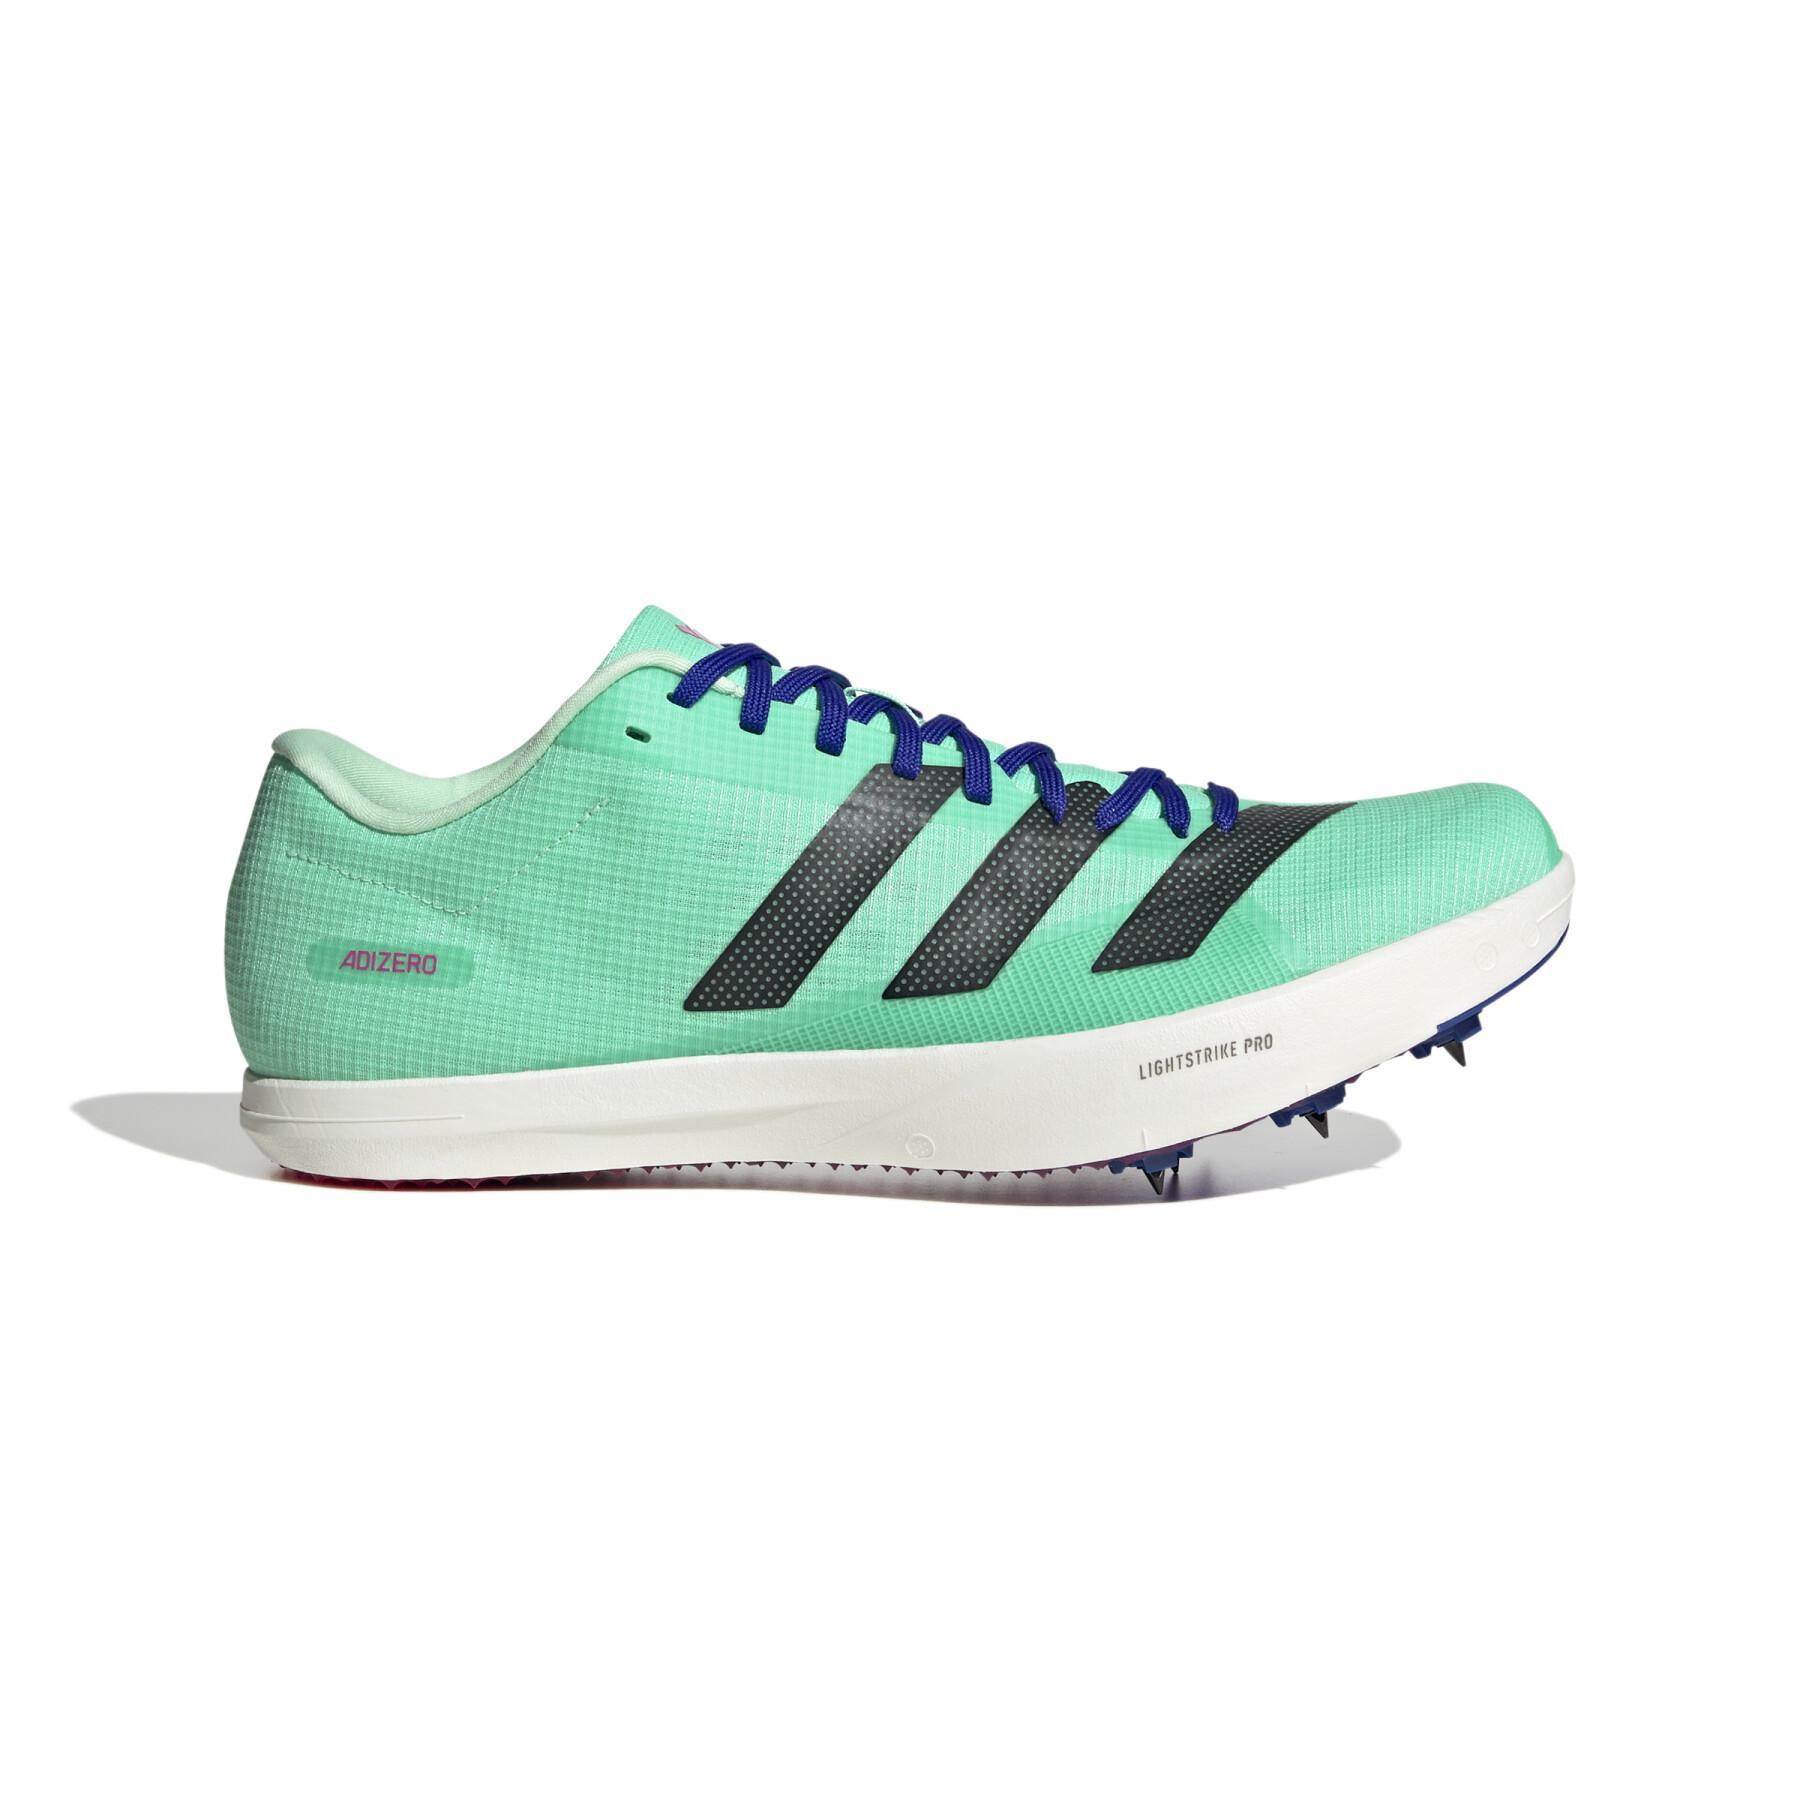 Chaussures d'athlétisme de saut en longueur adidas Adizero